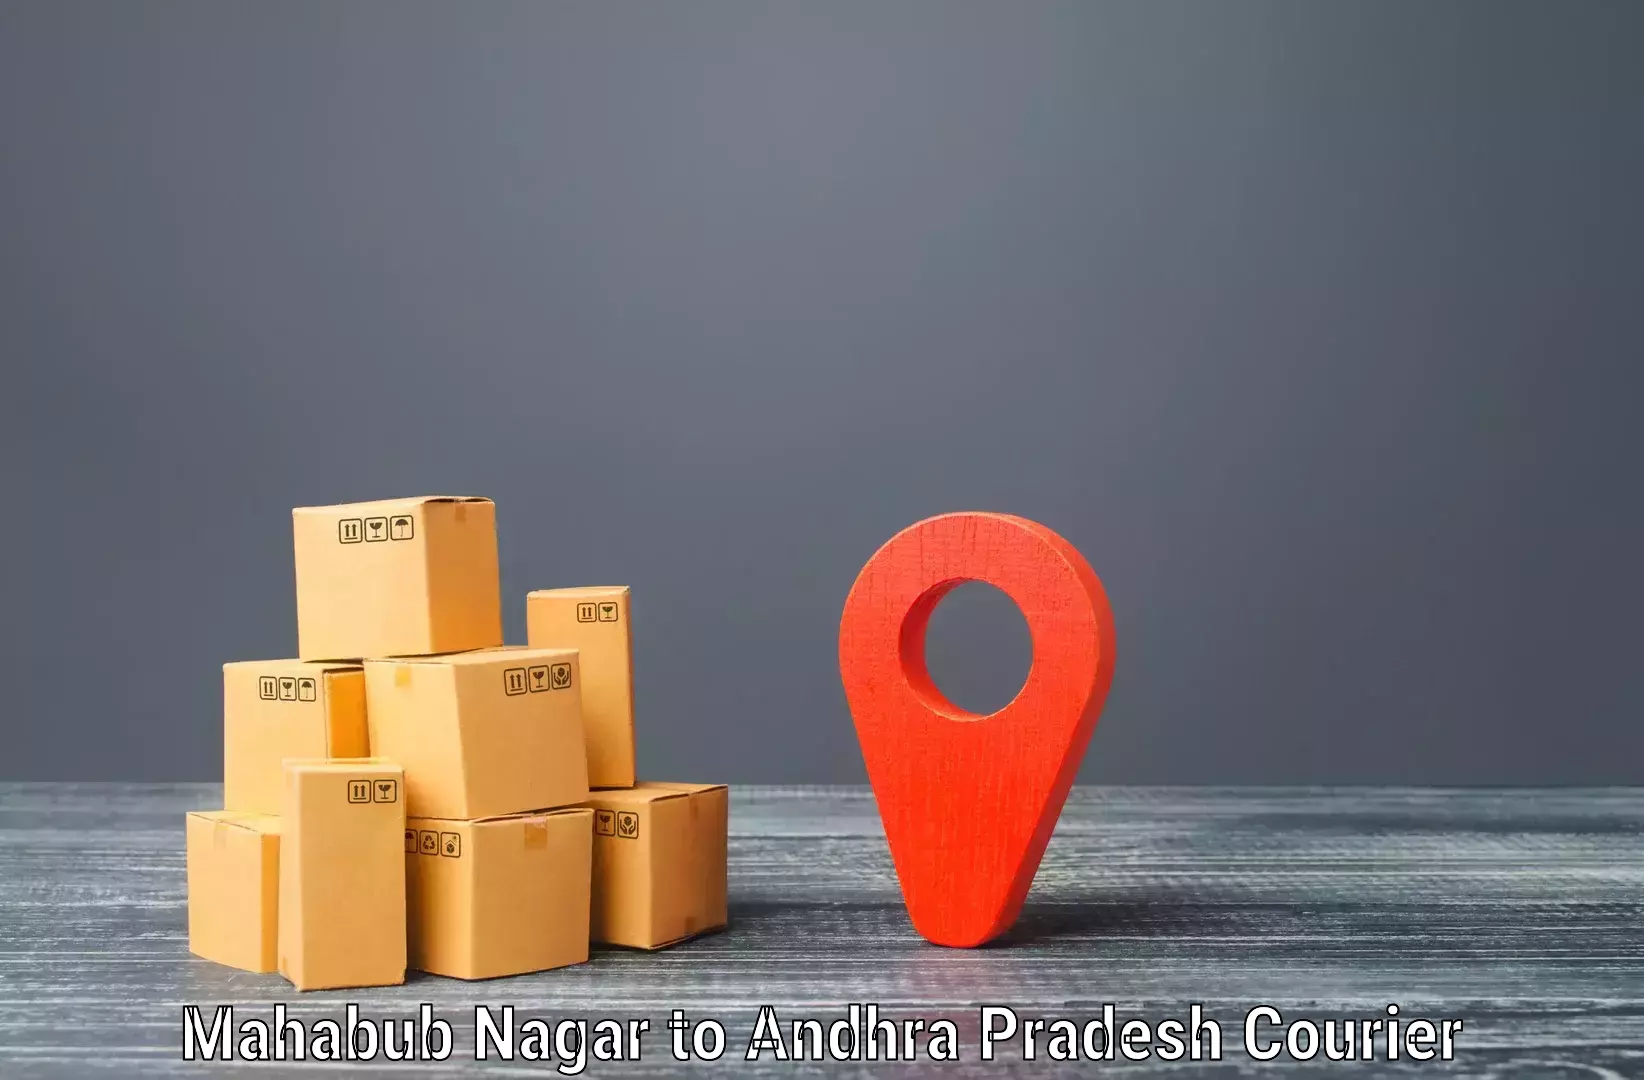 Innovative courier solutions Mahabub Nagar to Vizianagaram